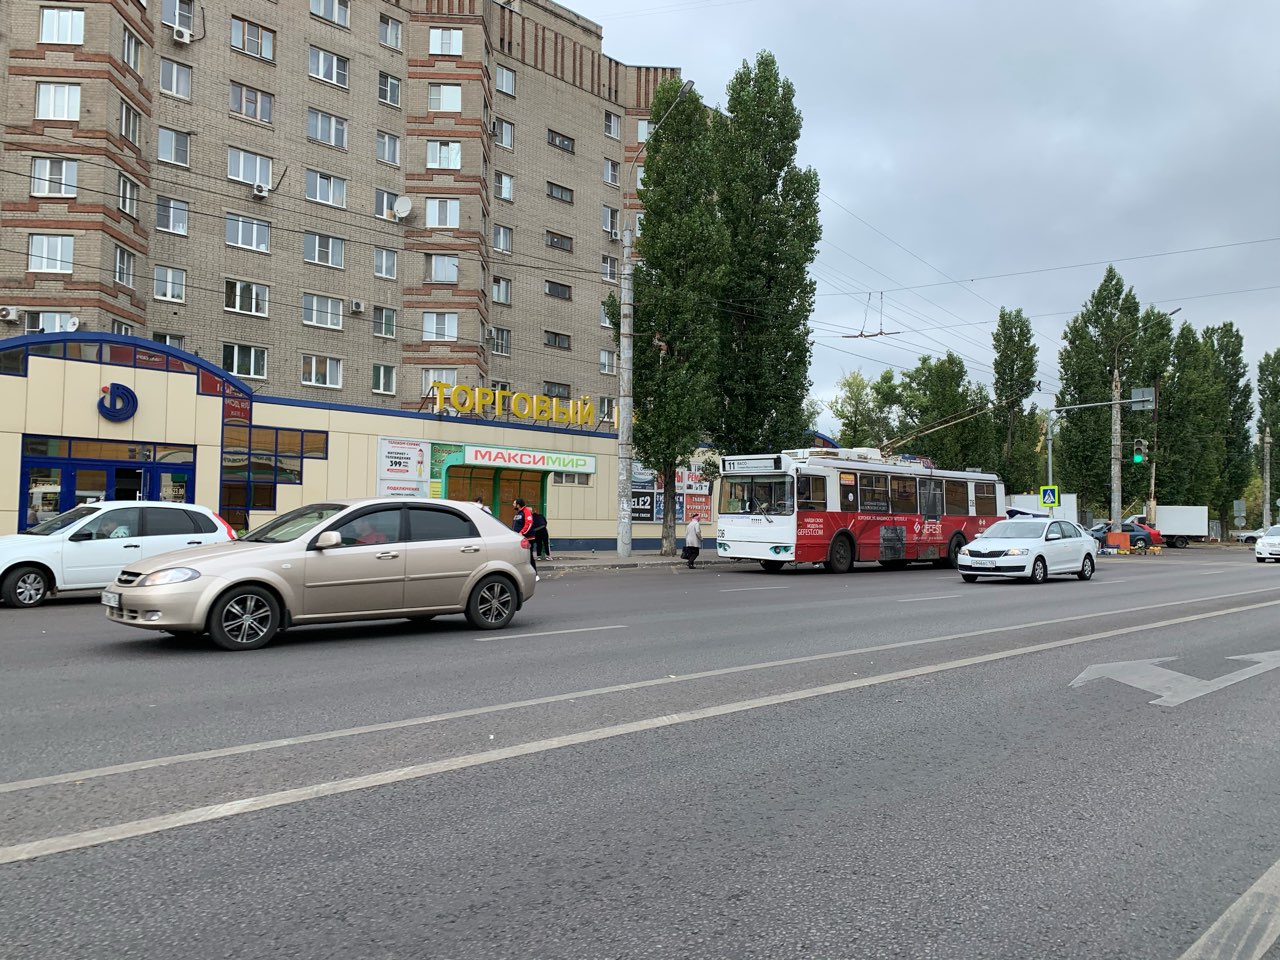 Дополнительный троллейбус № 5 запущен в Нижнем Новгороде